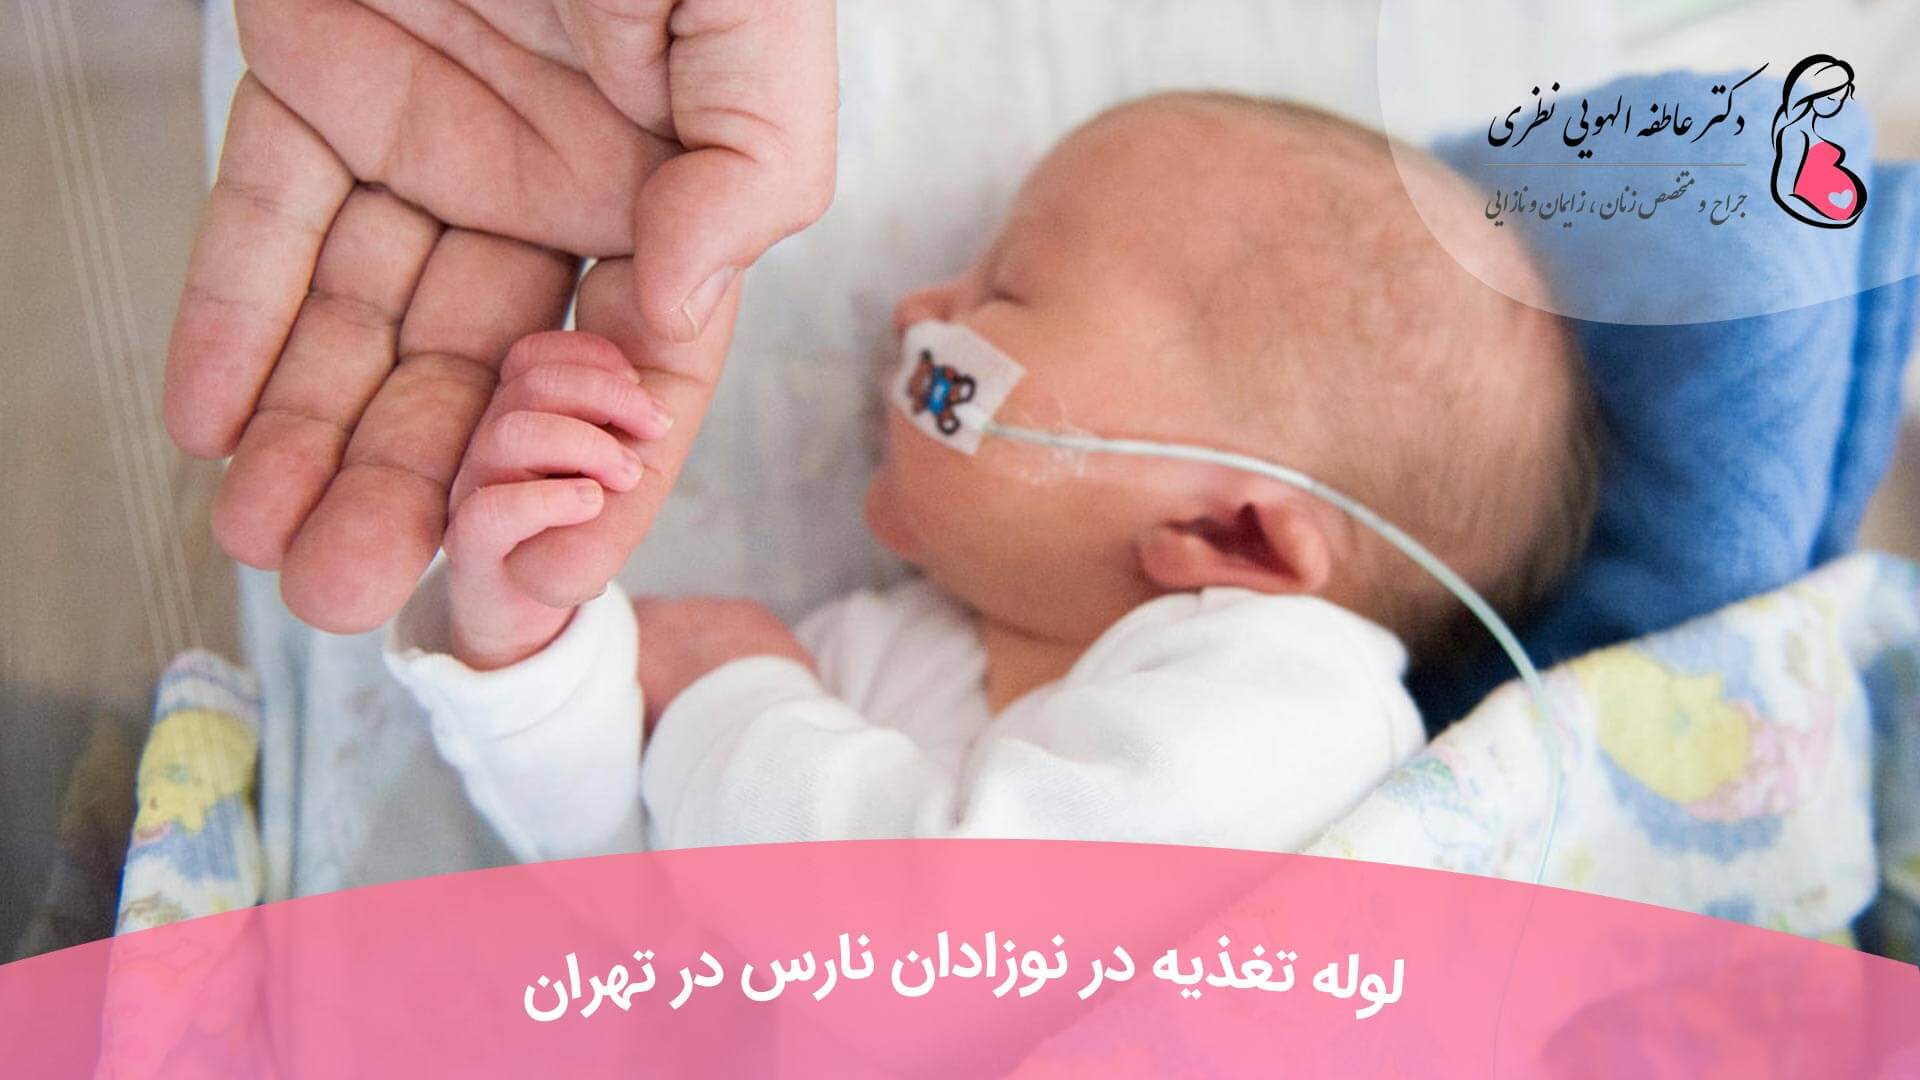 لوله تغذیه در نوزادان نارس در تهران